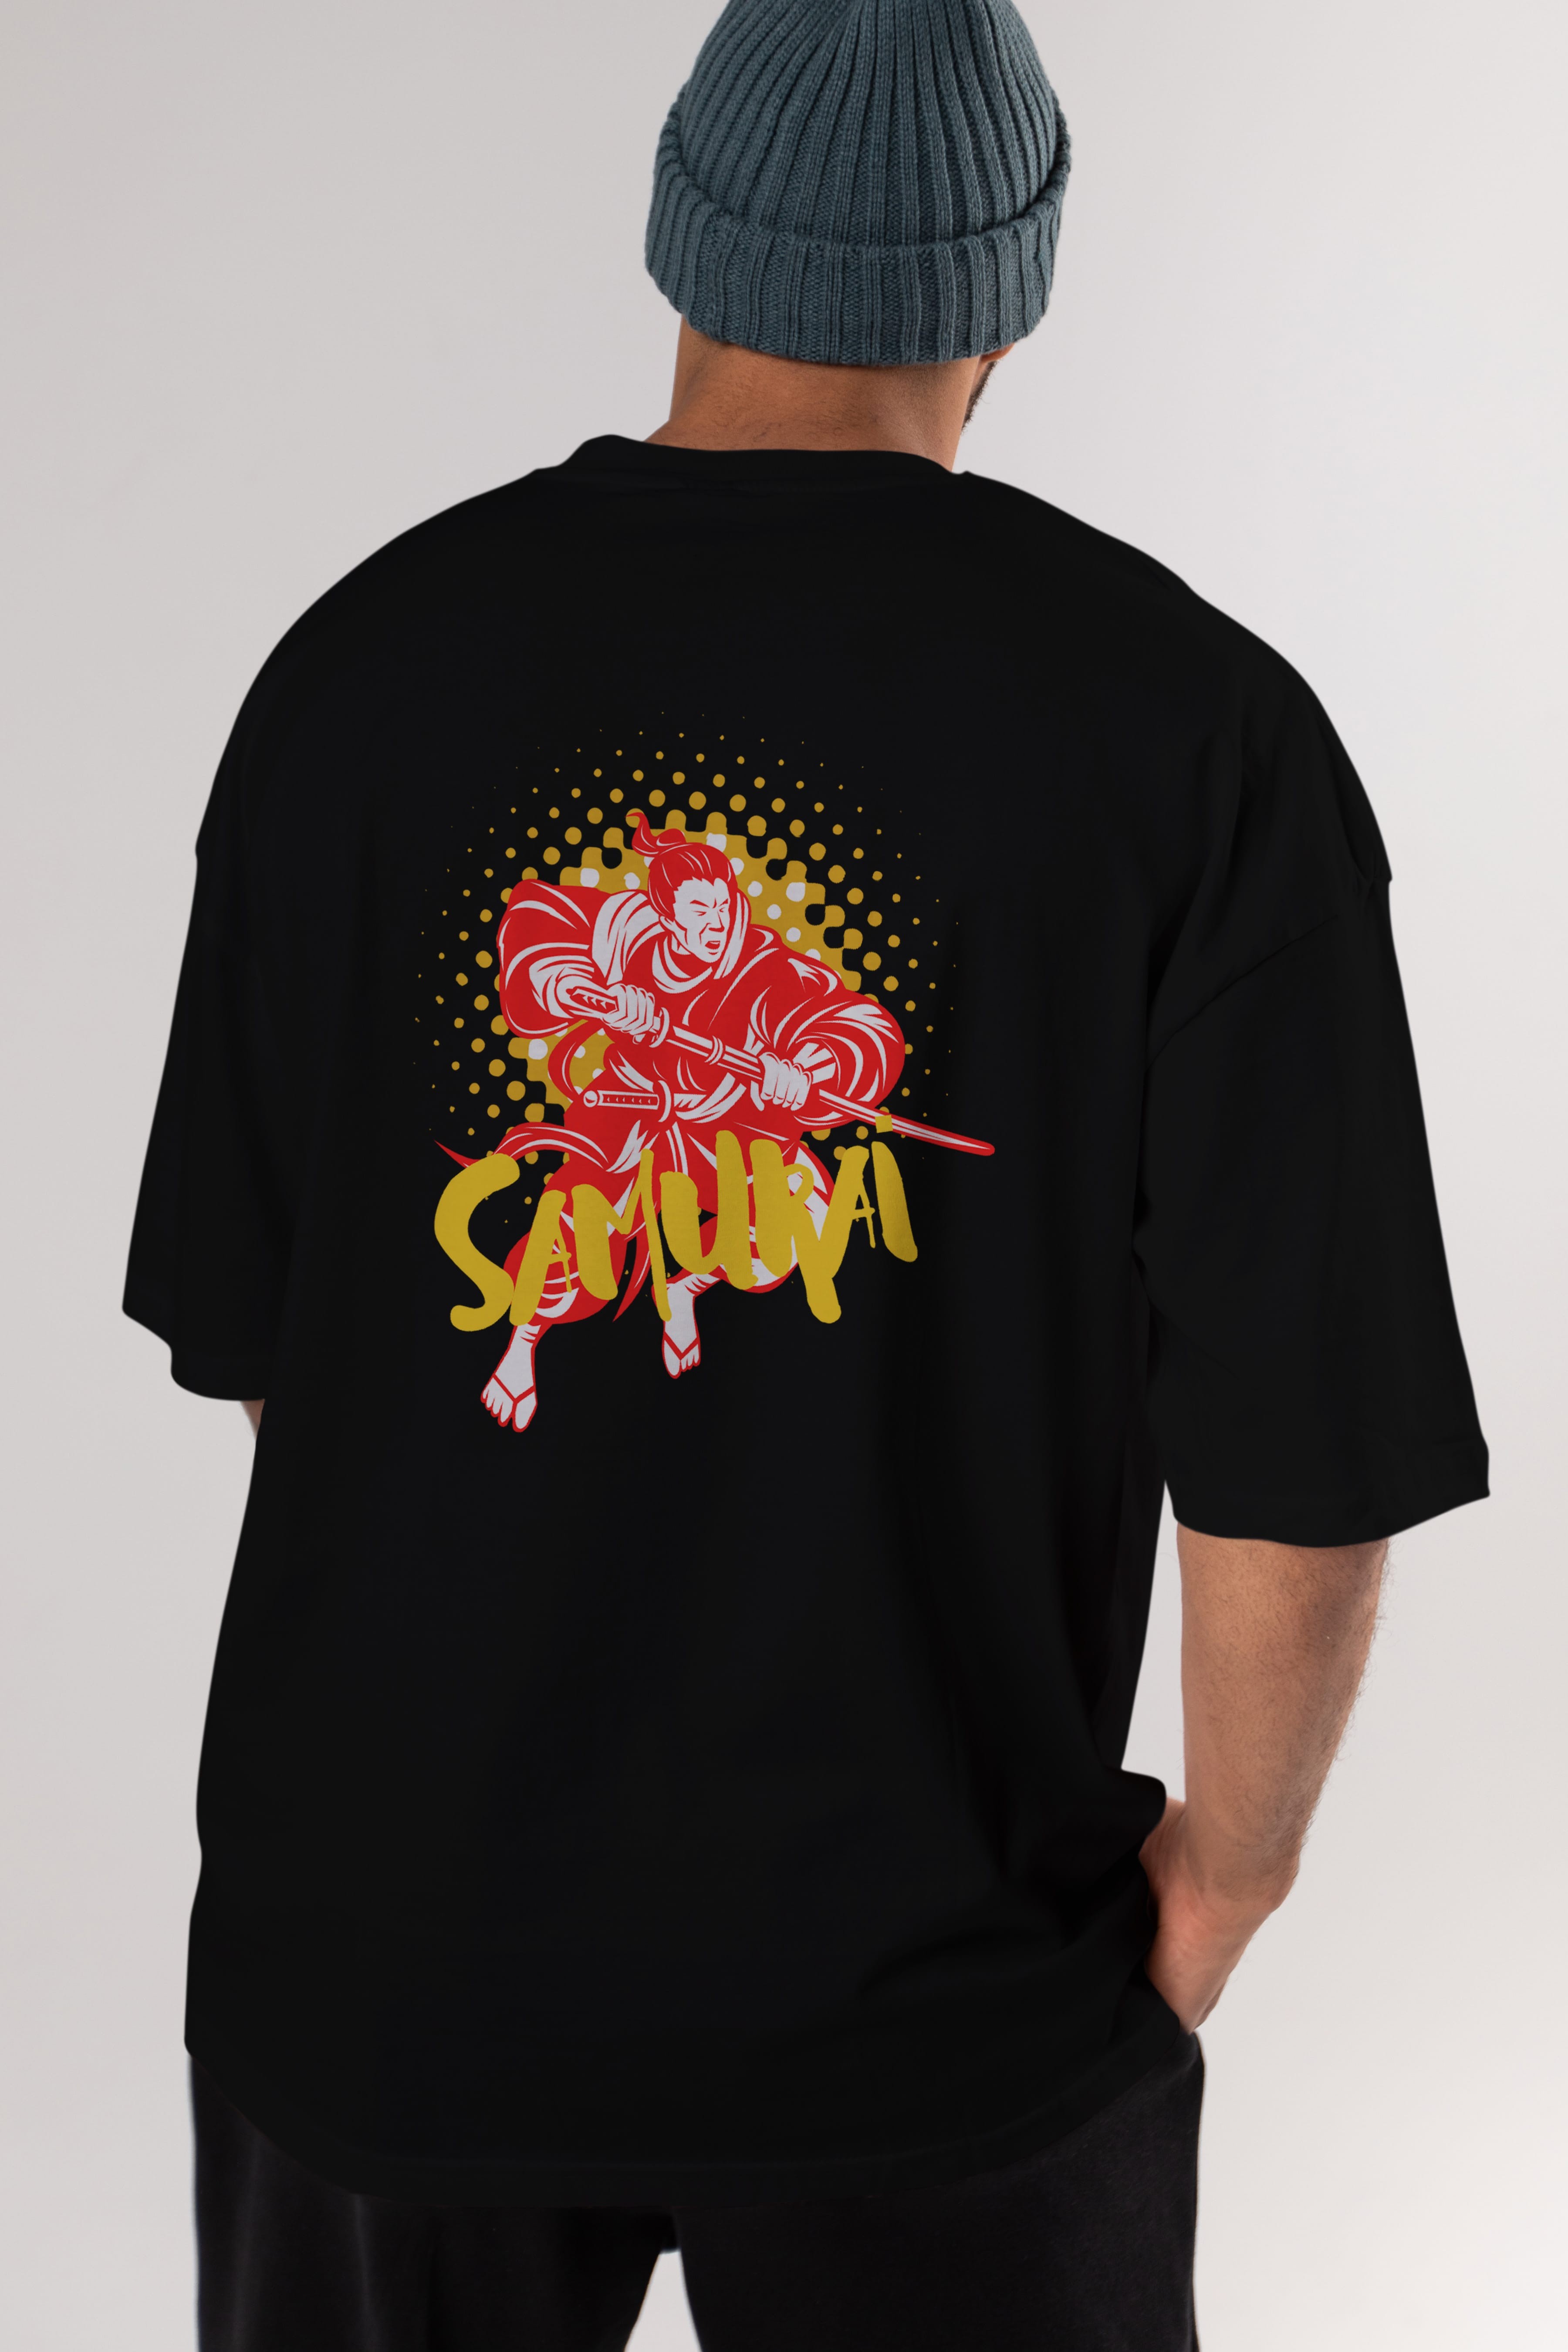 Samurai Arka Baskılı Oversize t-shirt Erkek Kadın Unisex